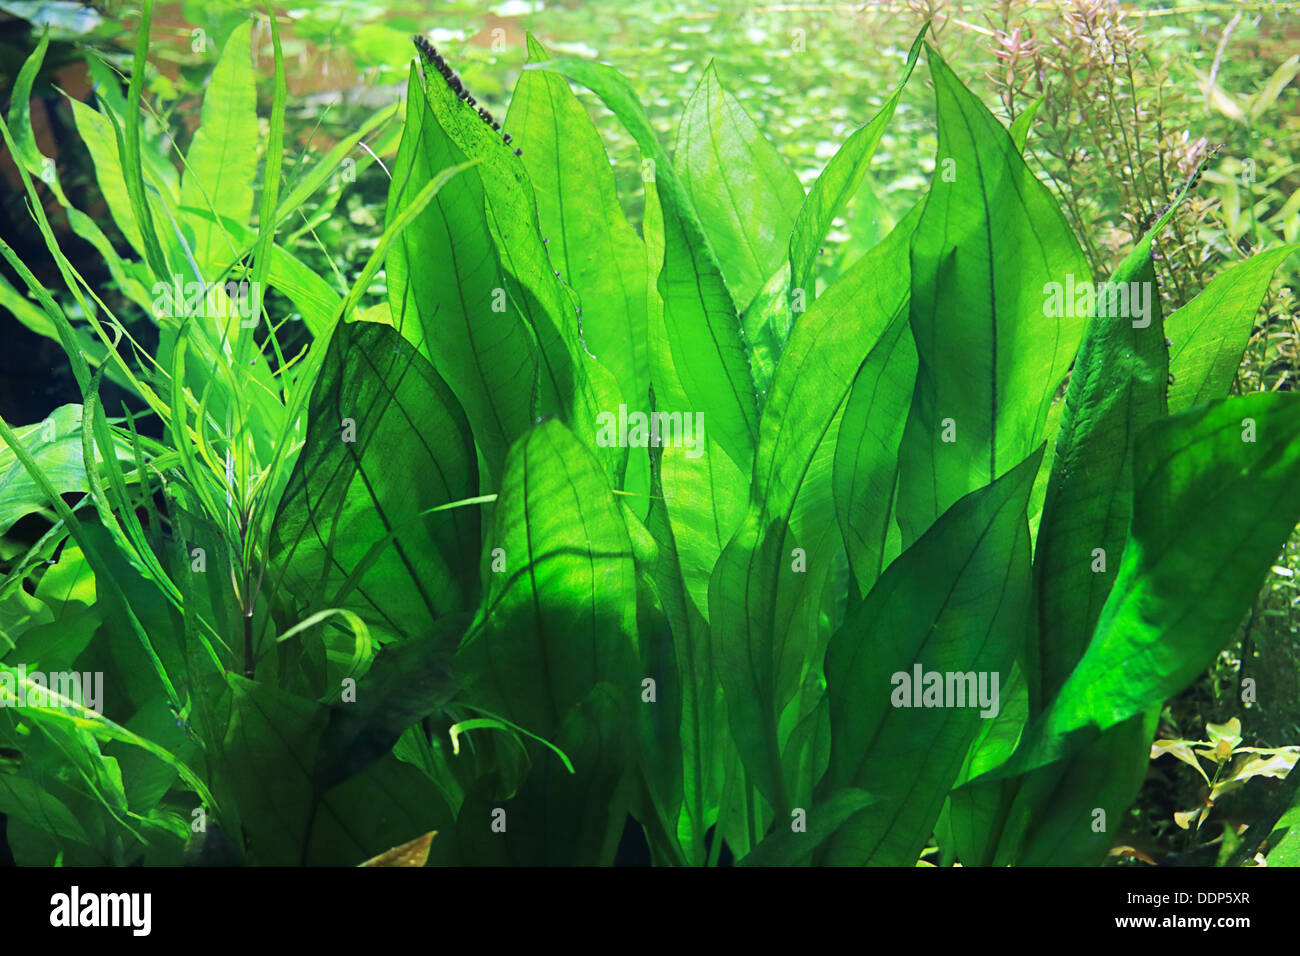 Aquatic plant in a aquarium Stock Photo